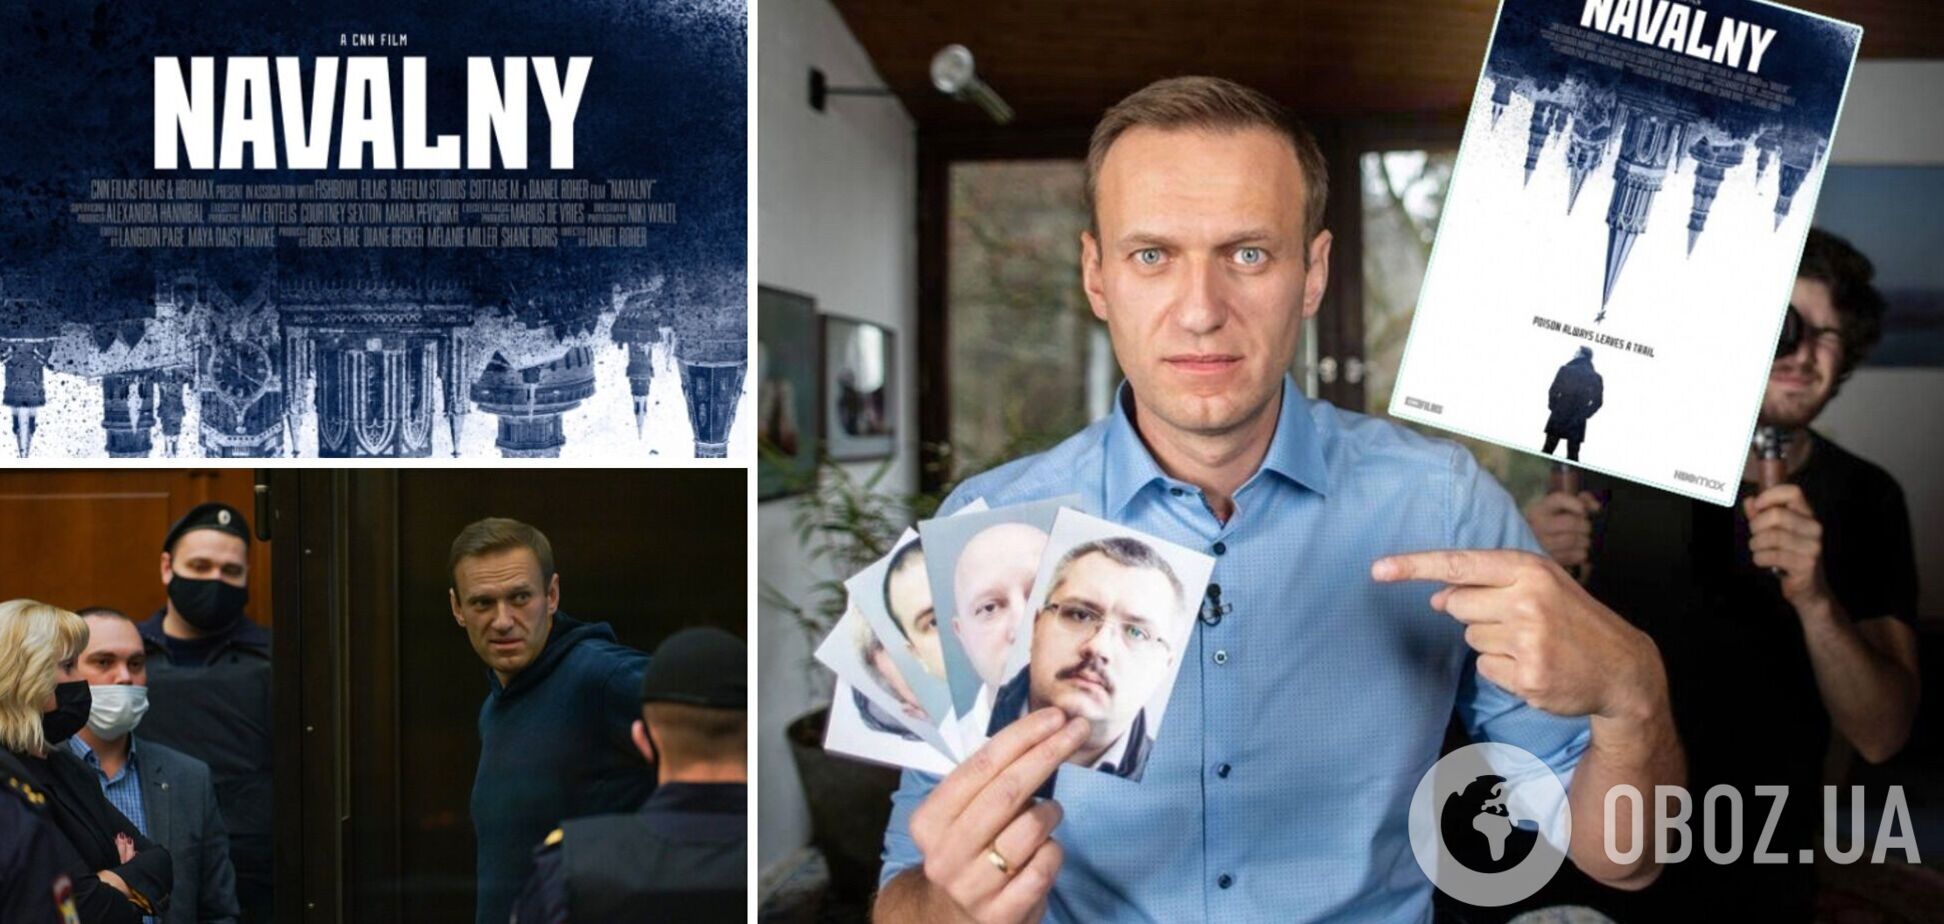 Канадець, який зняв фільм про Навального, назвав Путіна 'простим смертним'